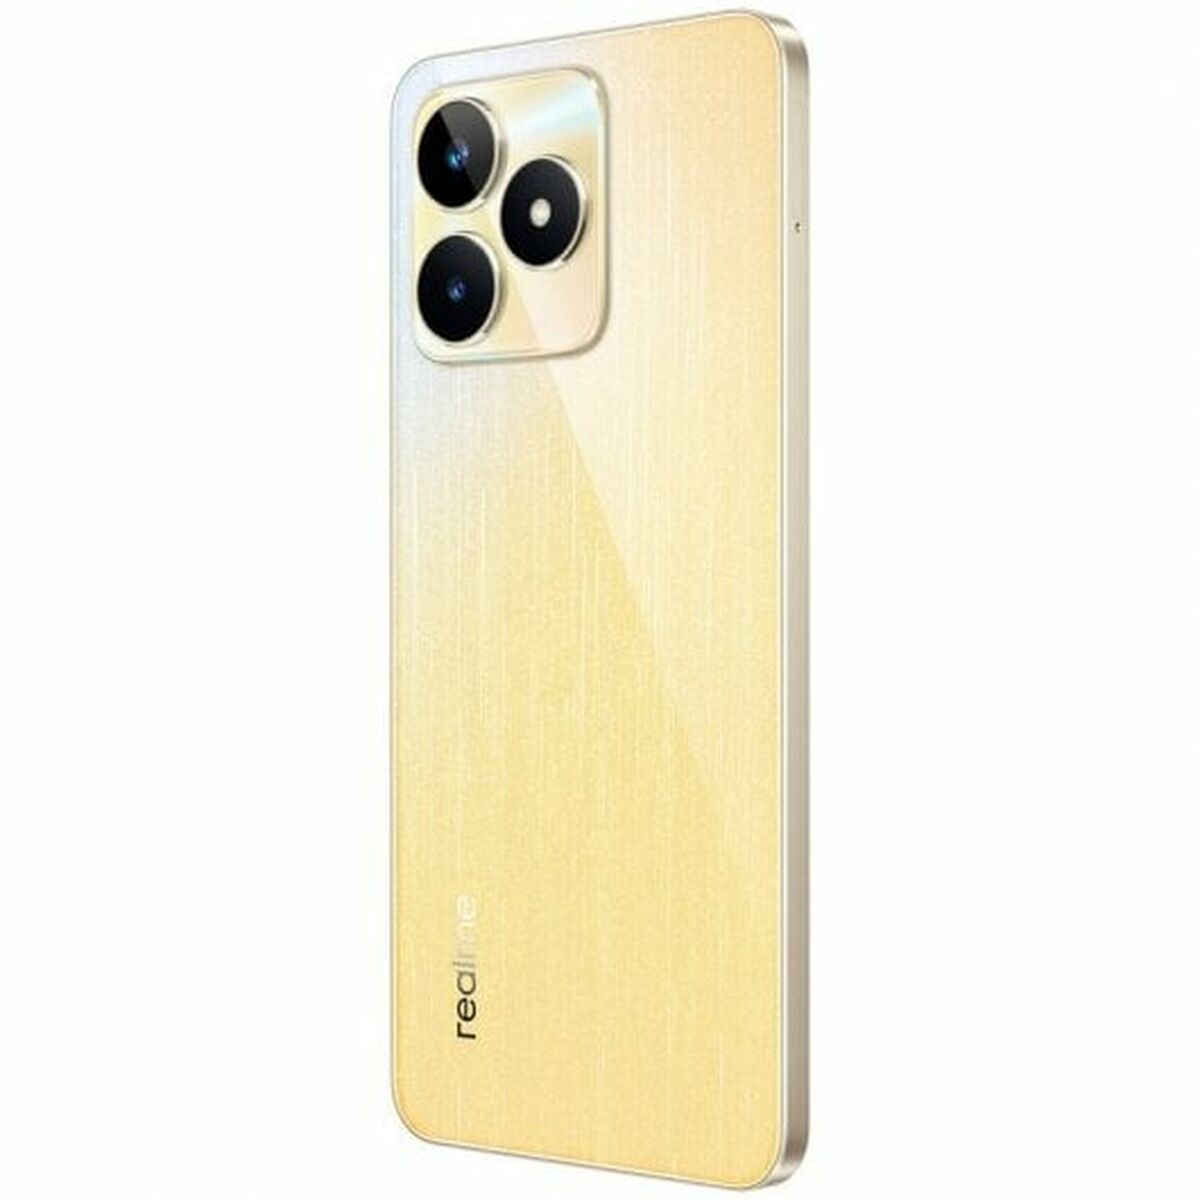 Smartphone Realme C53 Multicolour Gouden 6 GB RAM Octa Core 6,74" 128 GB